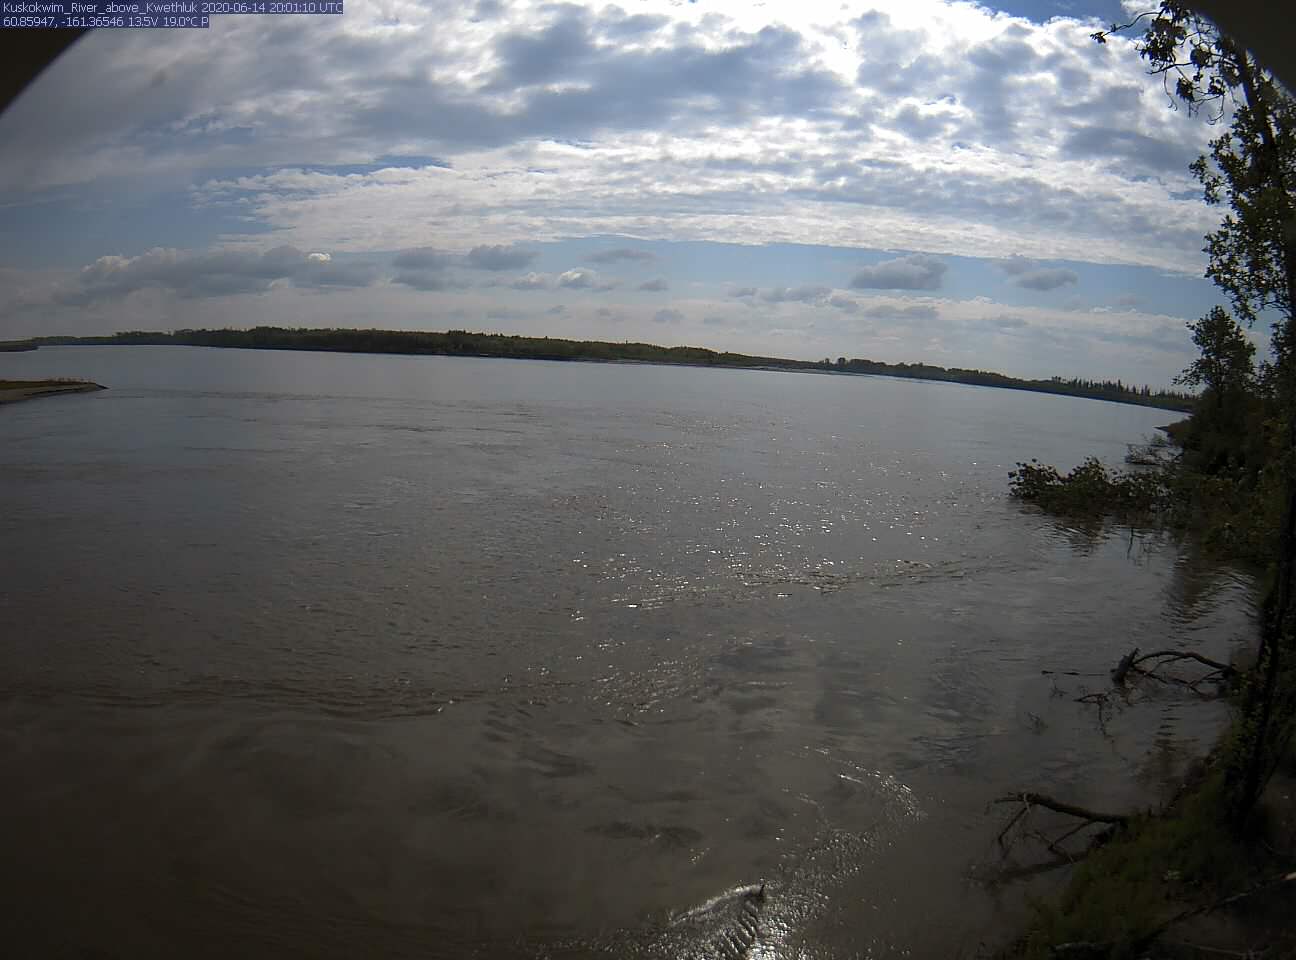 Kuskokwim_River_above_Kwethluk_20200614200111.jpg